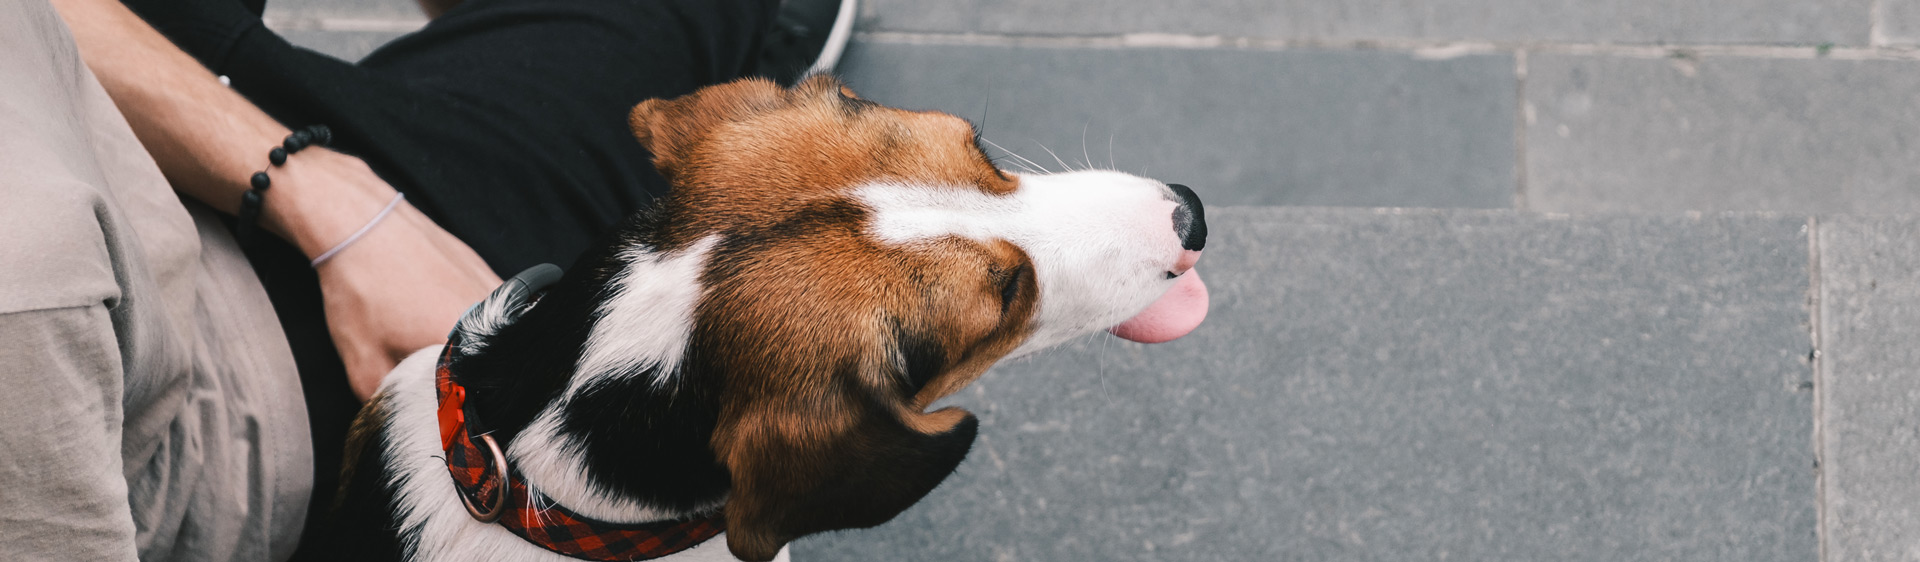 A beagle sits on the sidewalks of a city.